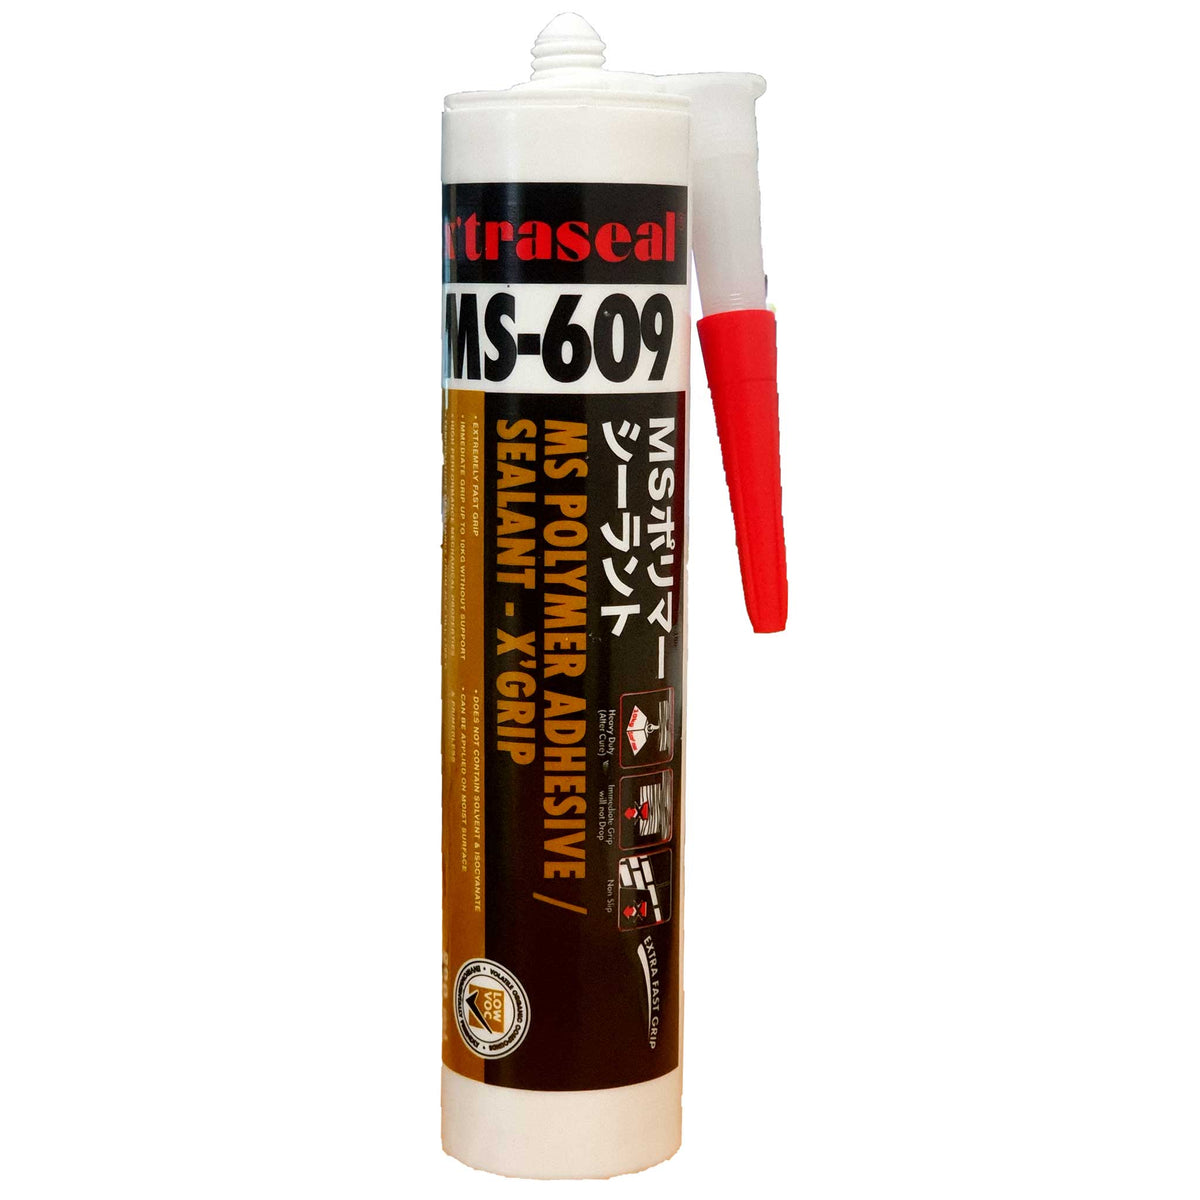 MS-609 - Fast Grab Adhesive